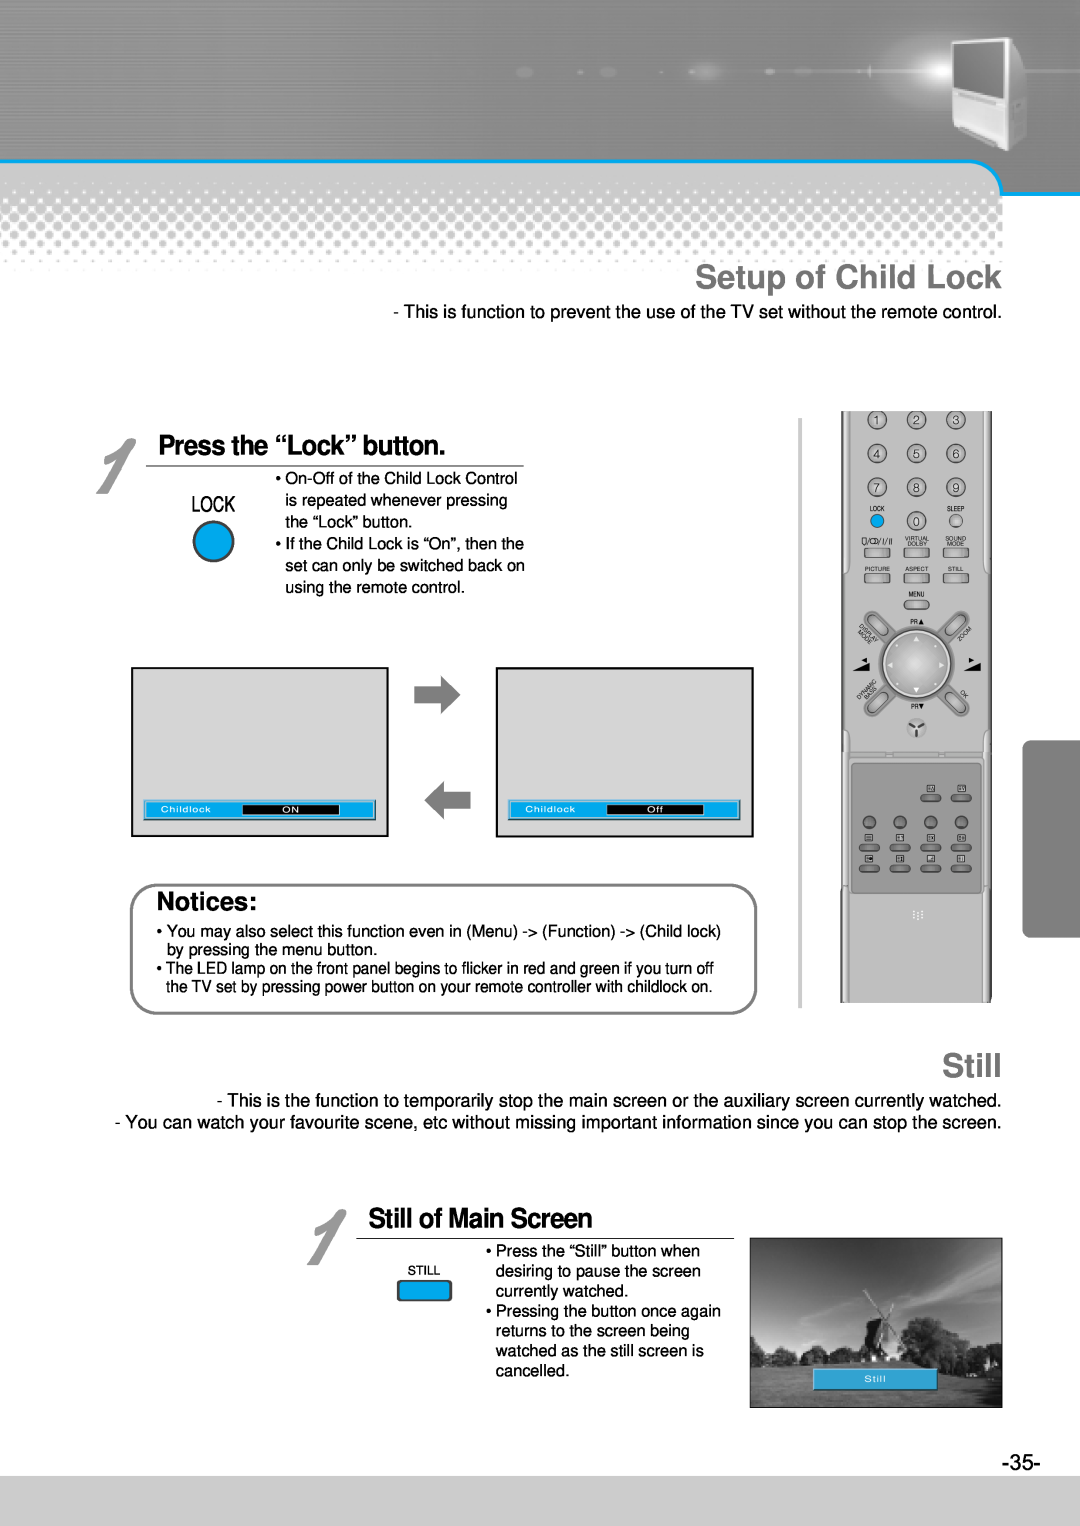 Daewoo DJ-4710, DJ-4720, DJ-4710E, DJ-4720E Setup of Child Lock, Press the “Lock” button, Still of Main Screen 